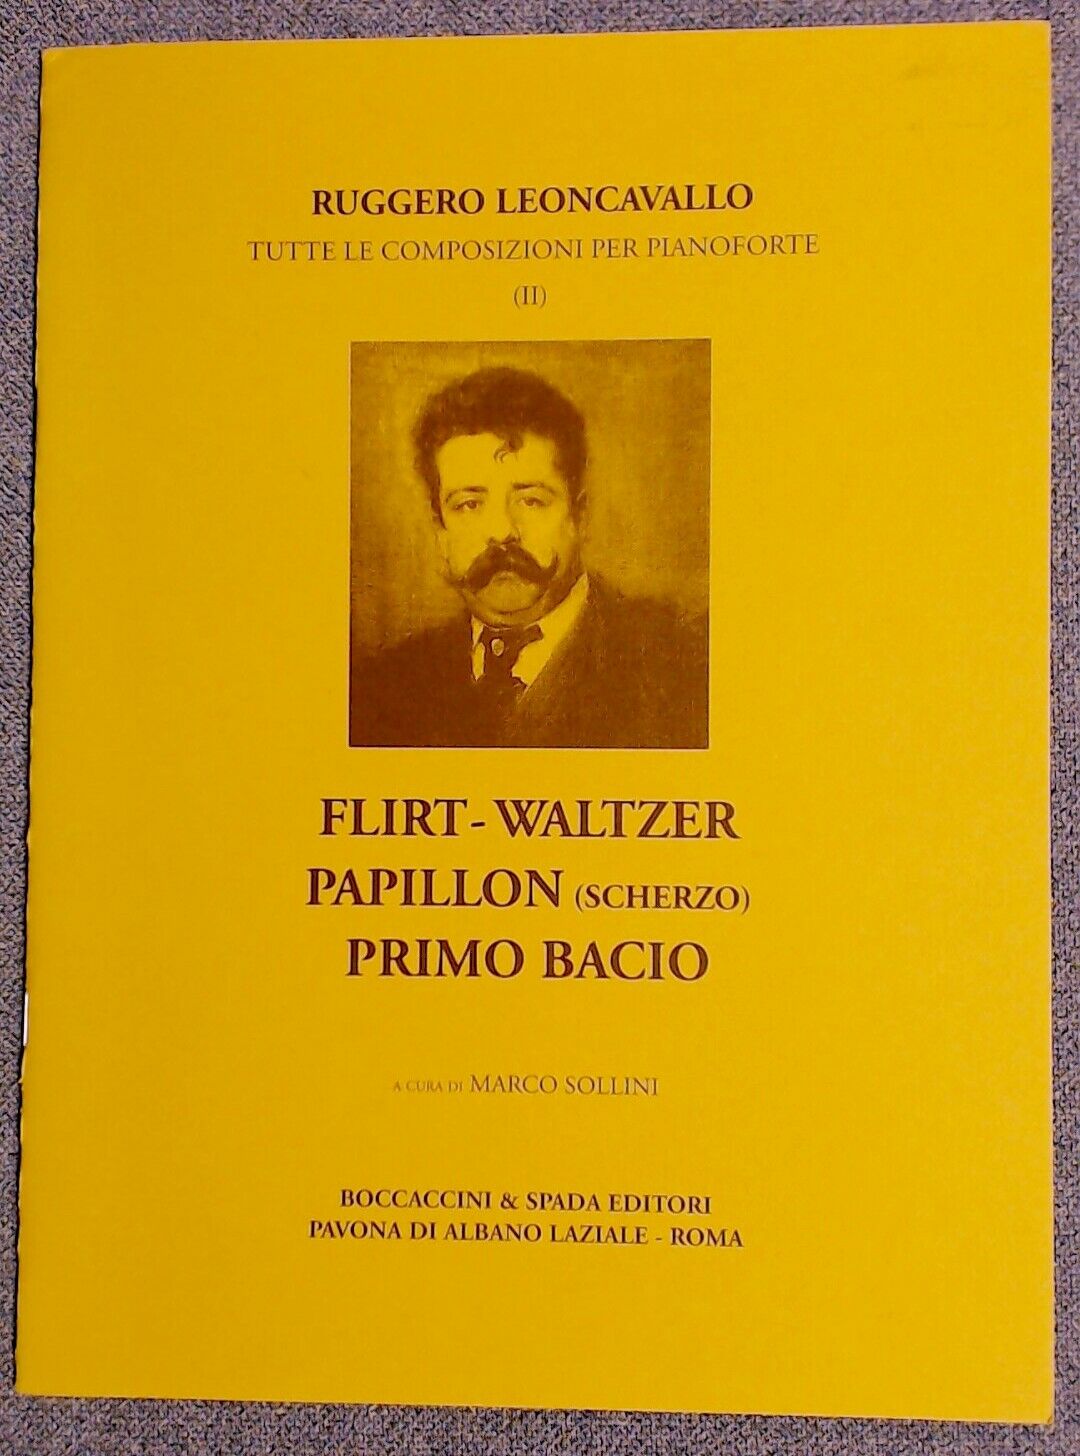 Alfredo Catalani Aspirazione Valzer-Waltz Boccaccini and Spada - Click Image to Close